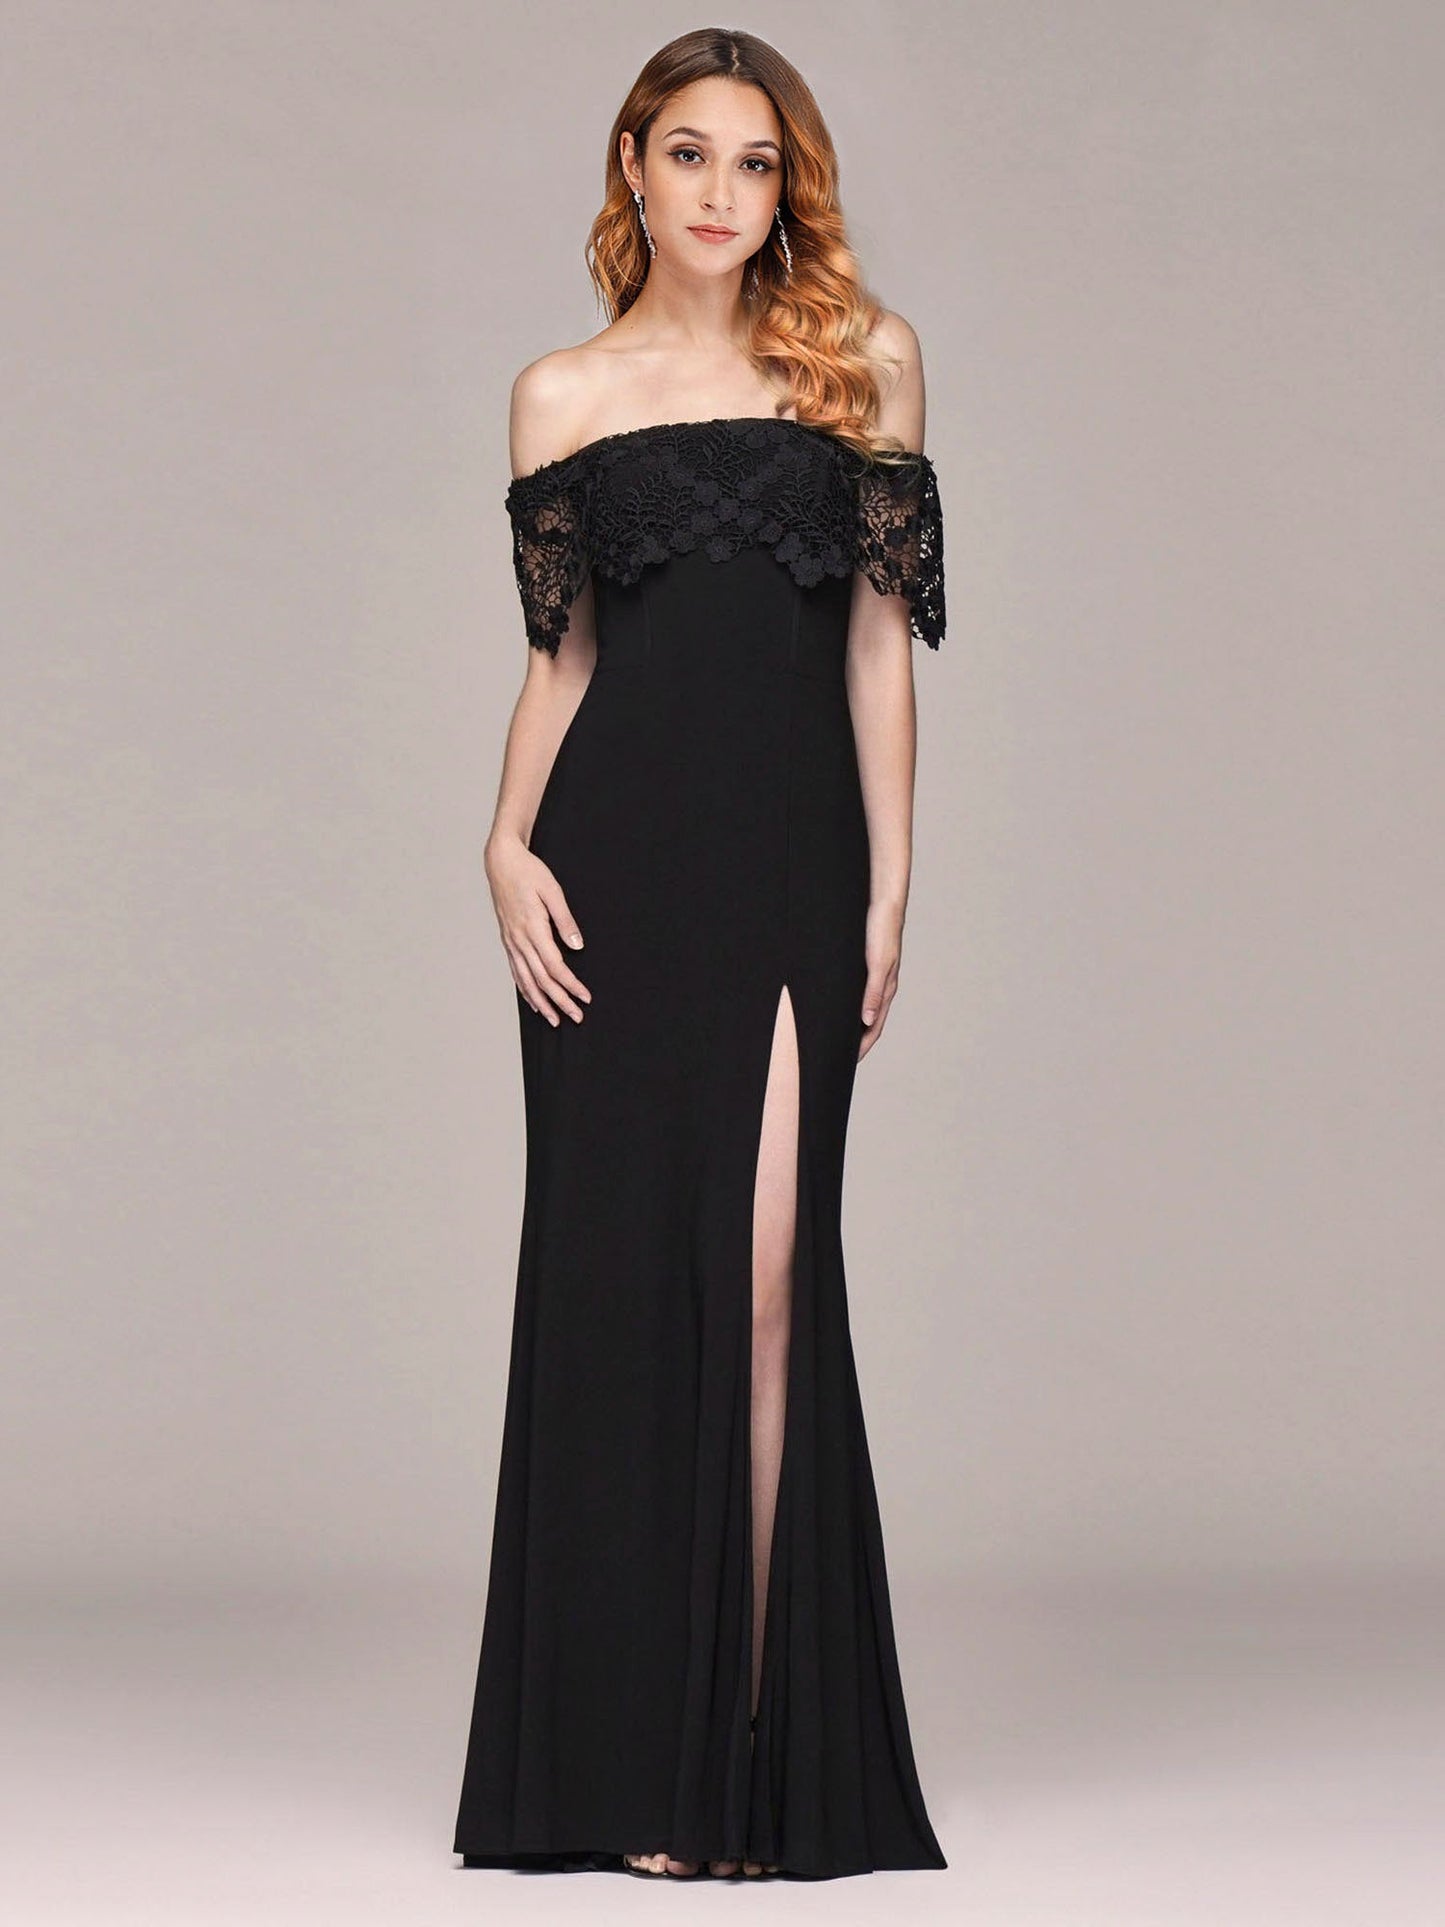 Long Off Shoulder Black Lace Formal Evening Dresses EZ07699